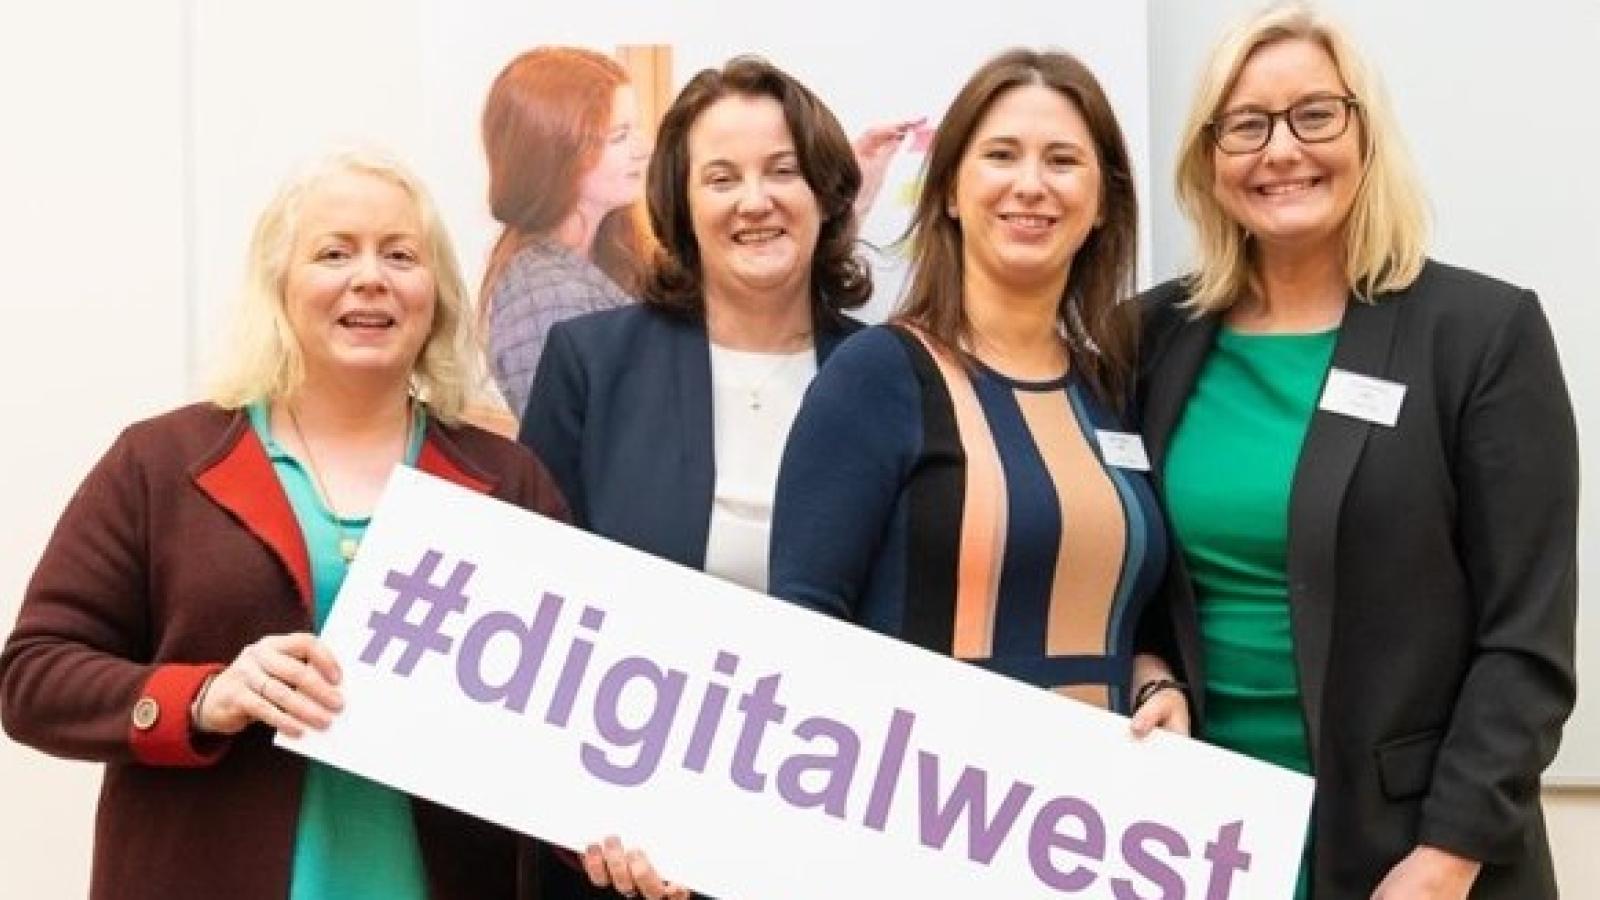 Digital West committee